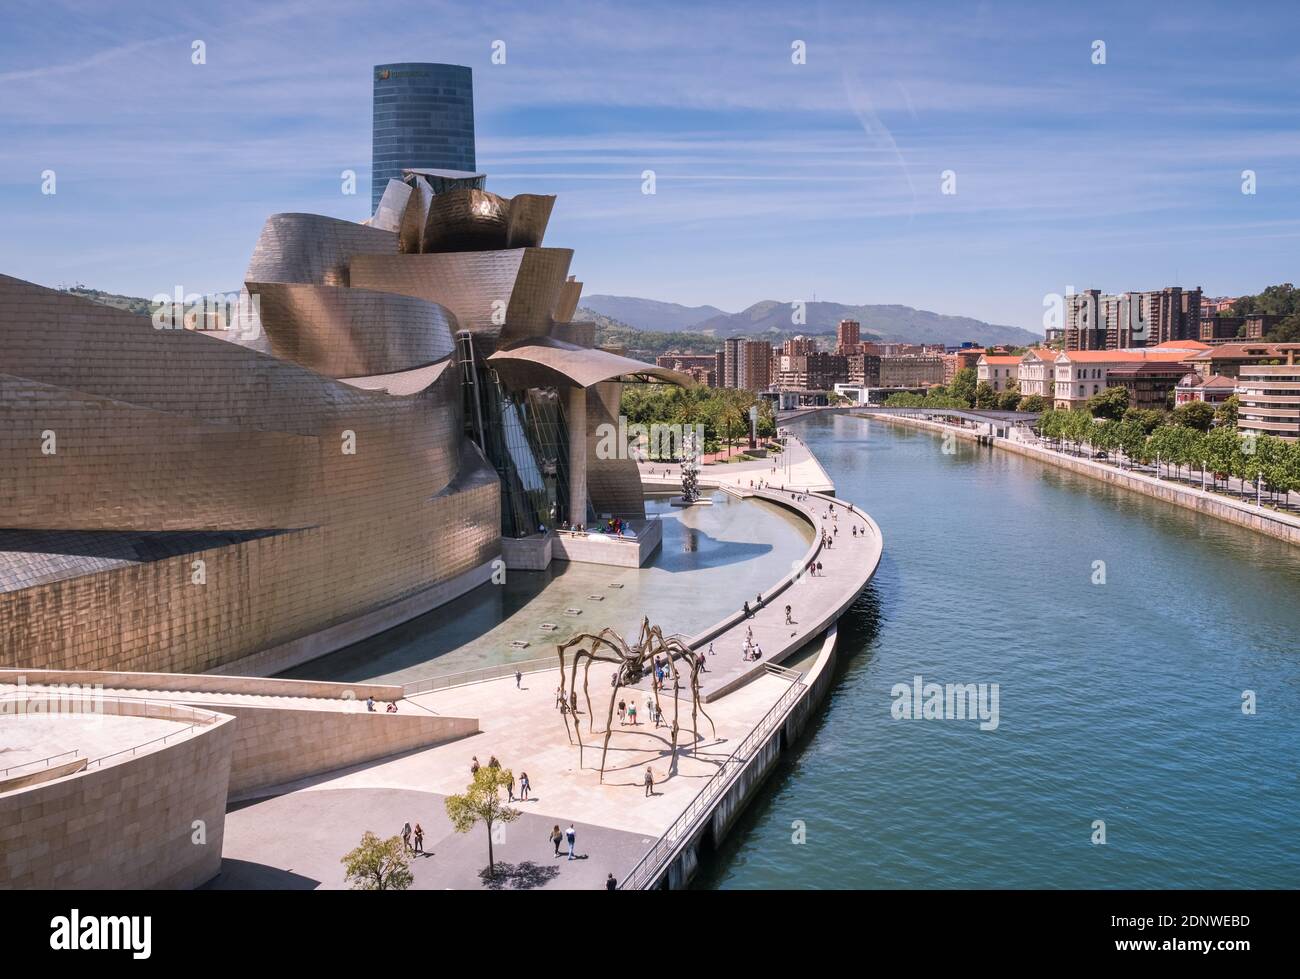 Bilbao, país Vasco, España: Vista del Museo Guggenheim junto al estuario del Nervión Foto de stock